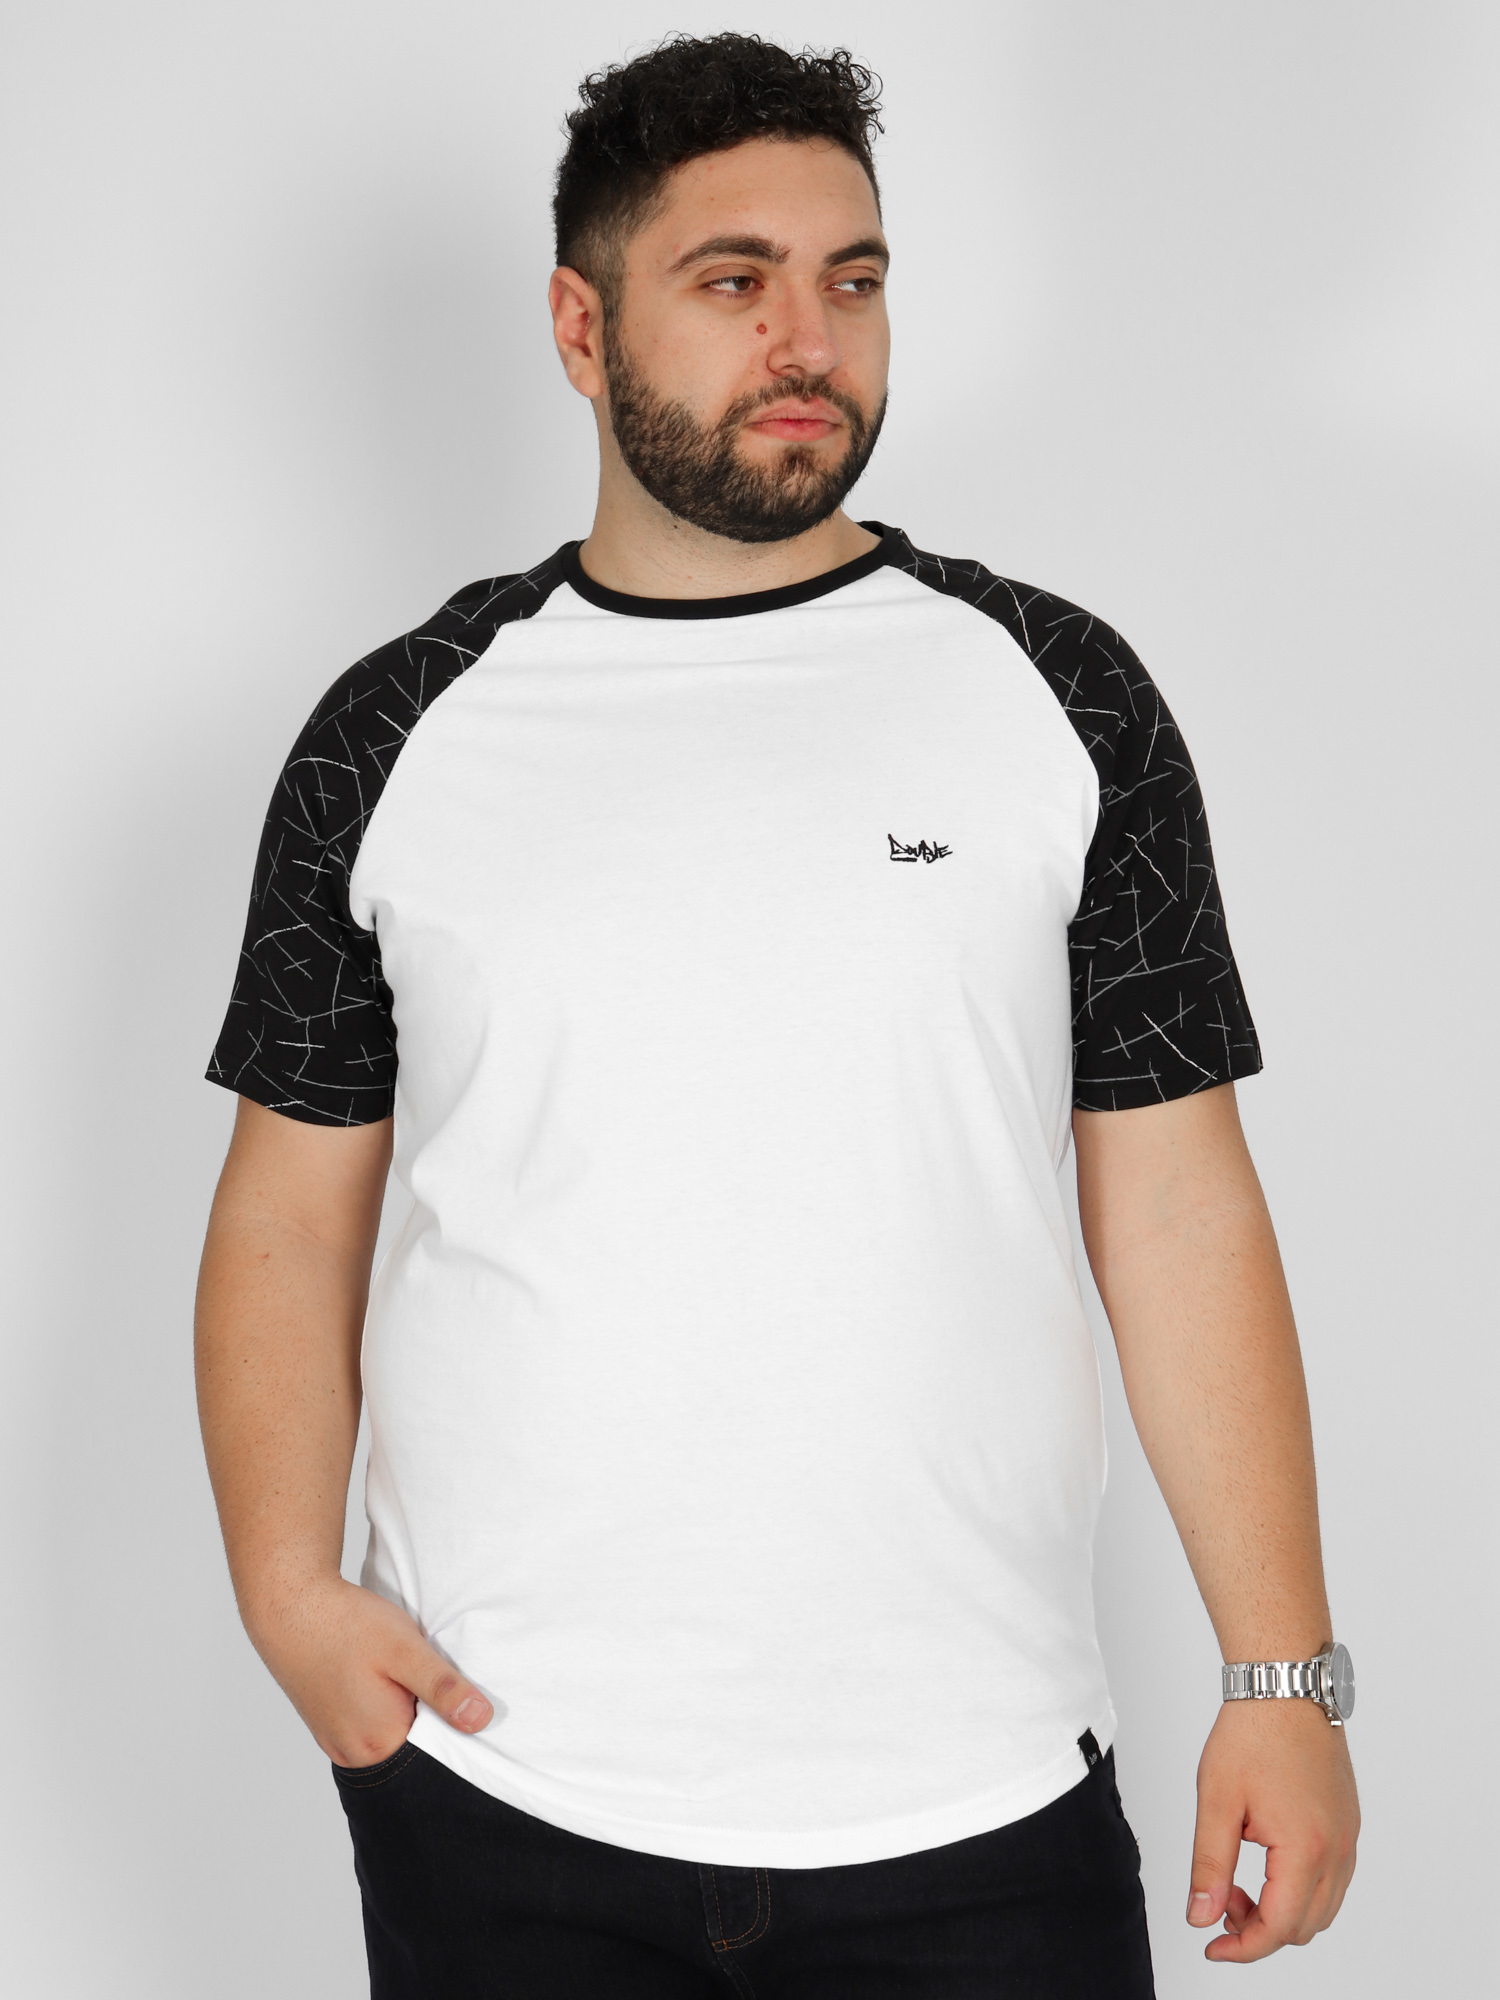 Ανδρική Μπλούζα Τ-shirt Δίχρωμη - Άσπρο